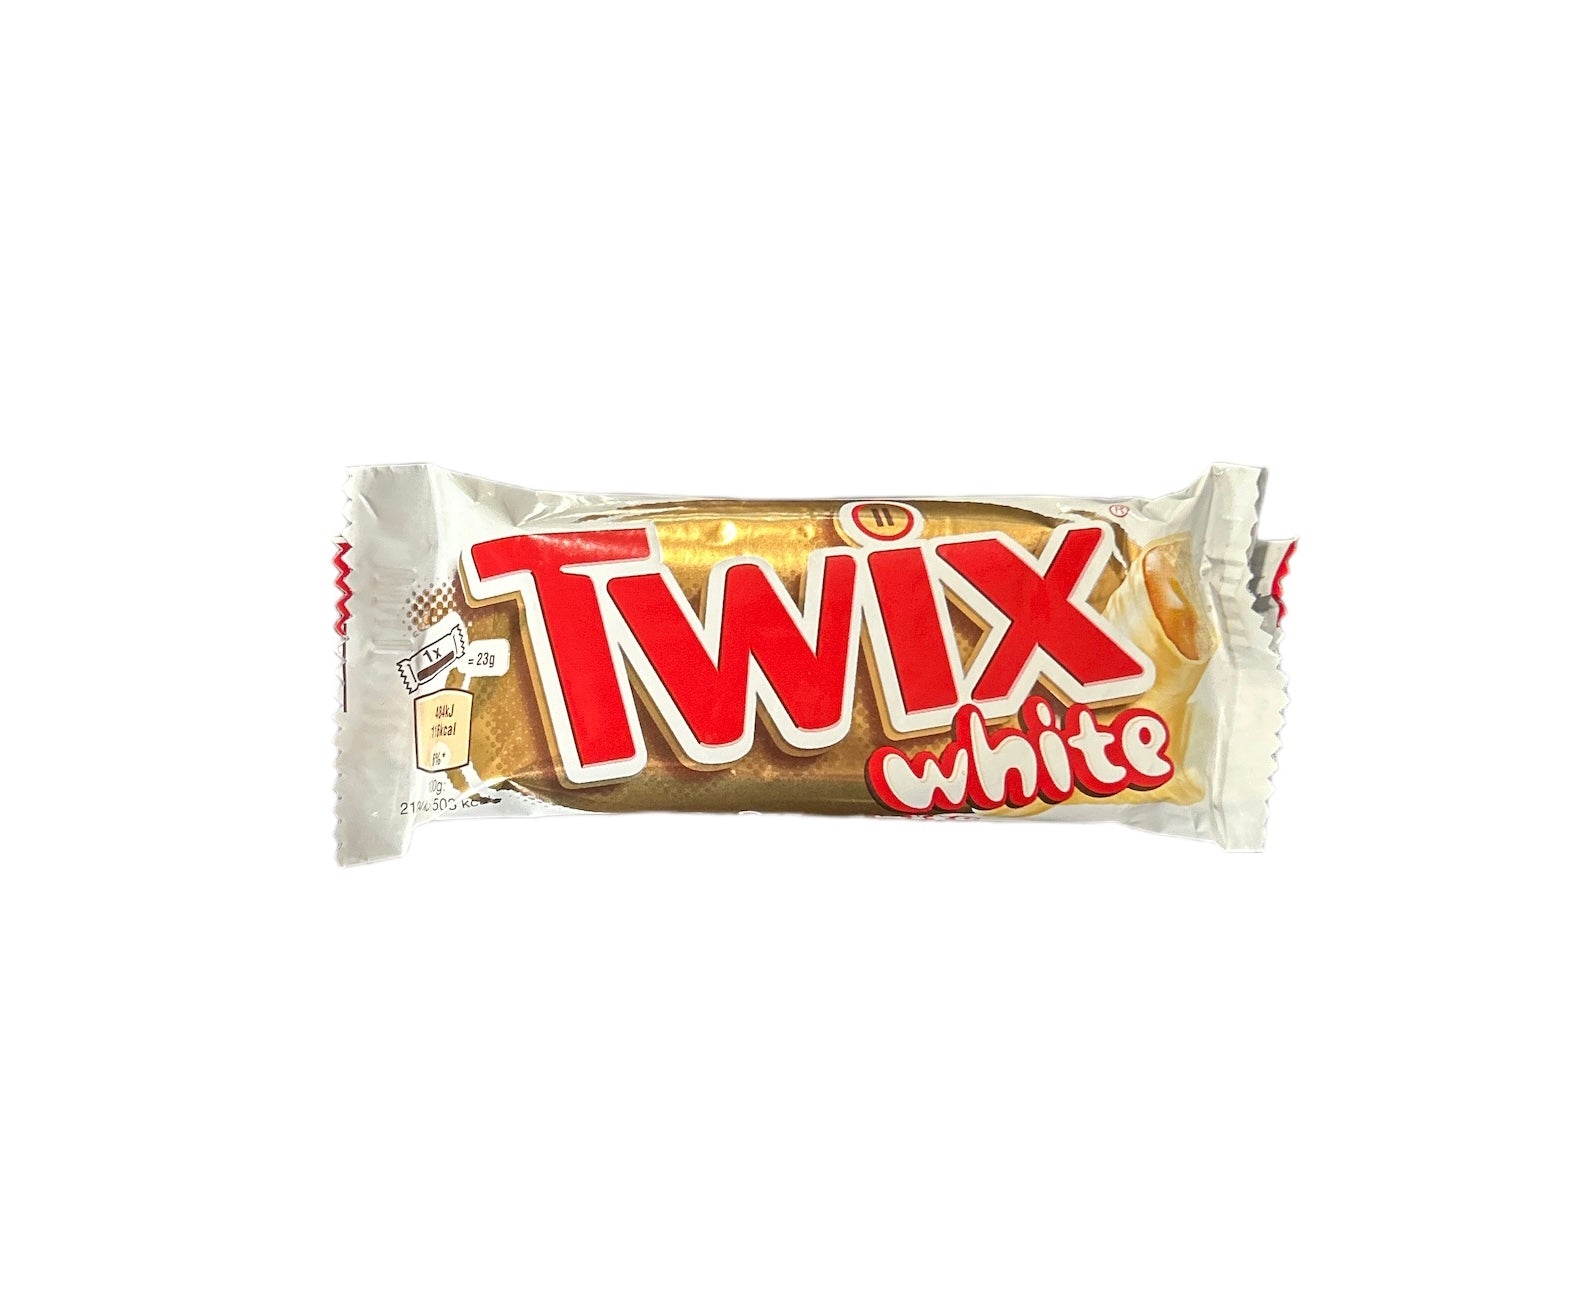 Twix White - Barretta al cioccolato bianco da 46g